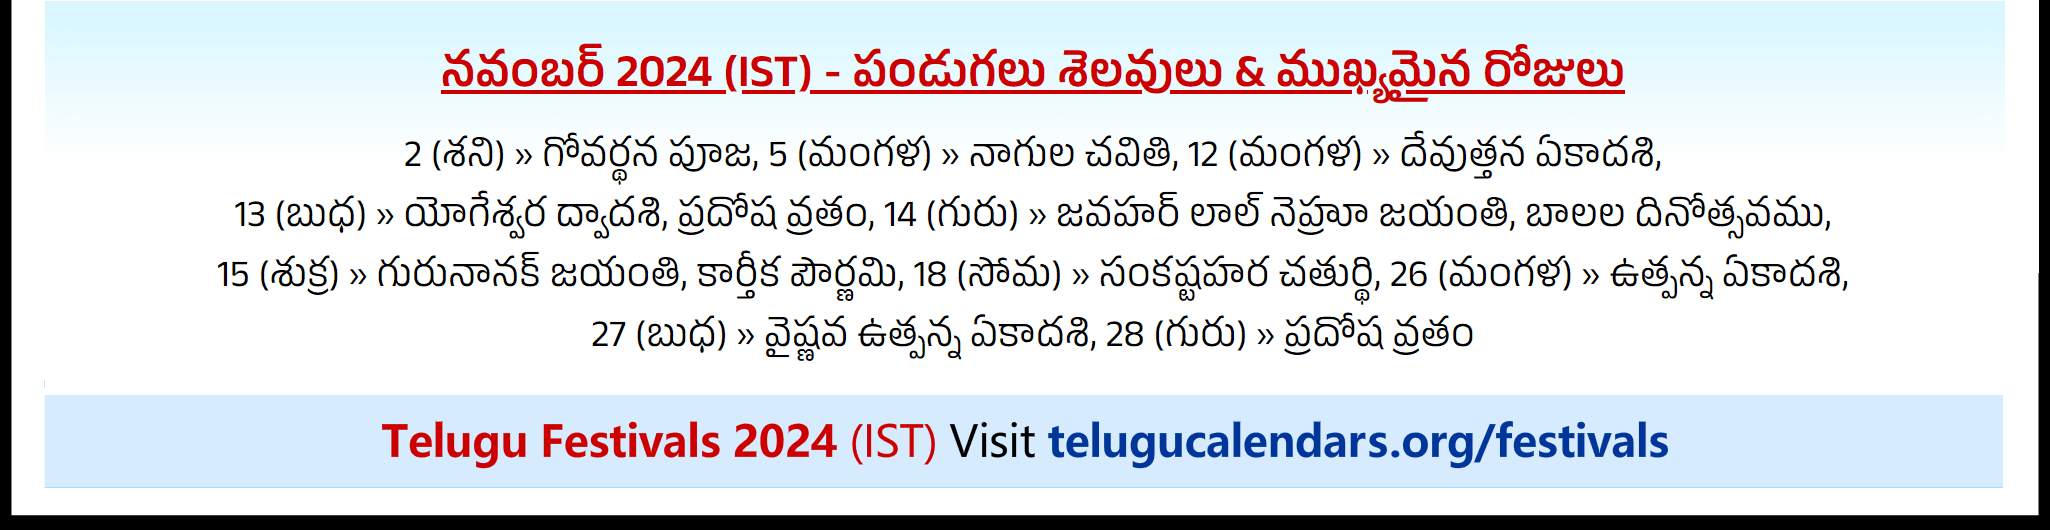 Telugu Festivals 2024 November Toronto